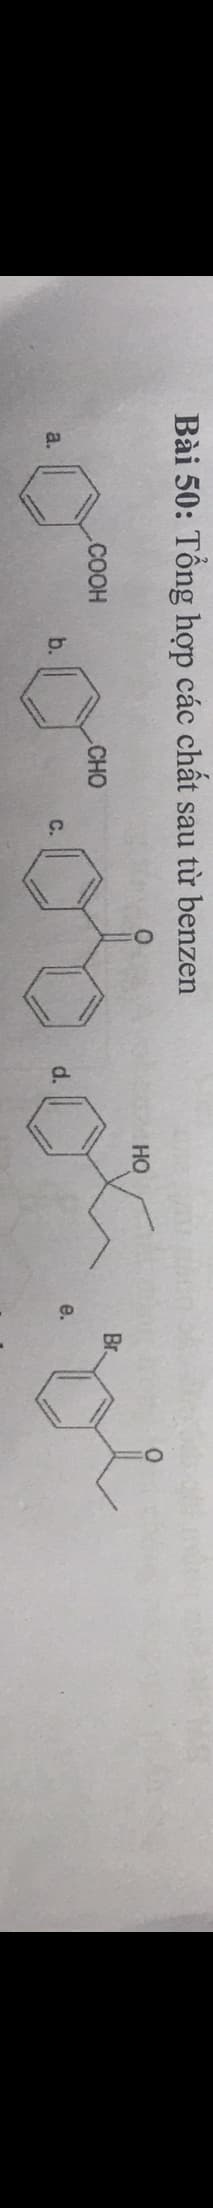 Bài 50: Tổng hợp các chất sau từ benzen
HO
.COOH
CHO
Br.
a.
b.
C.
d.
e.
